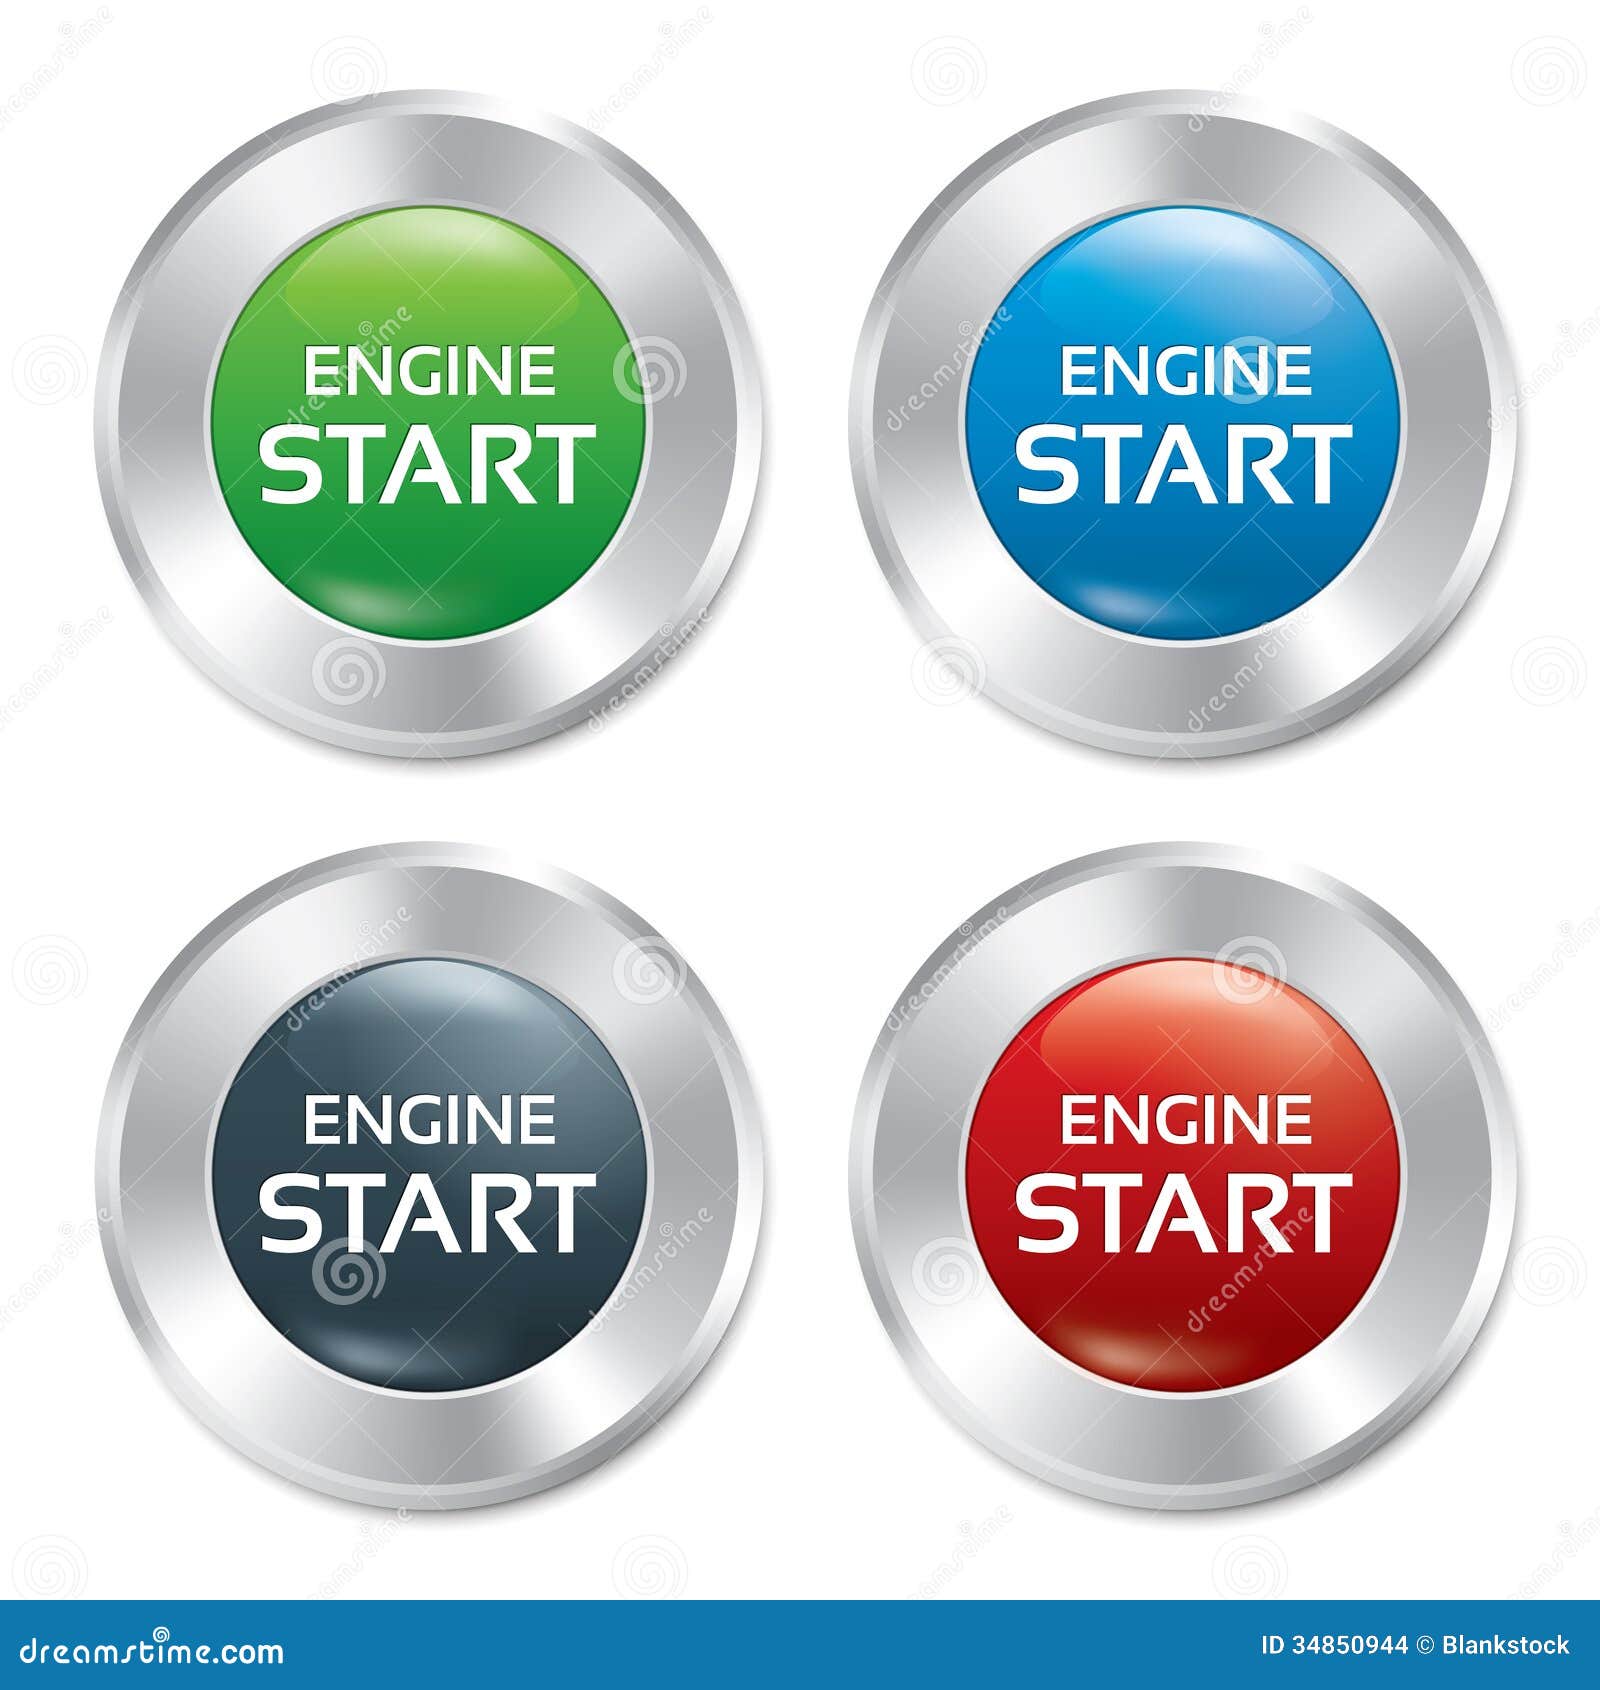 Start engine button red round sticker Royalty Free Vector